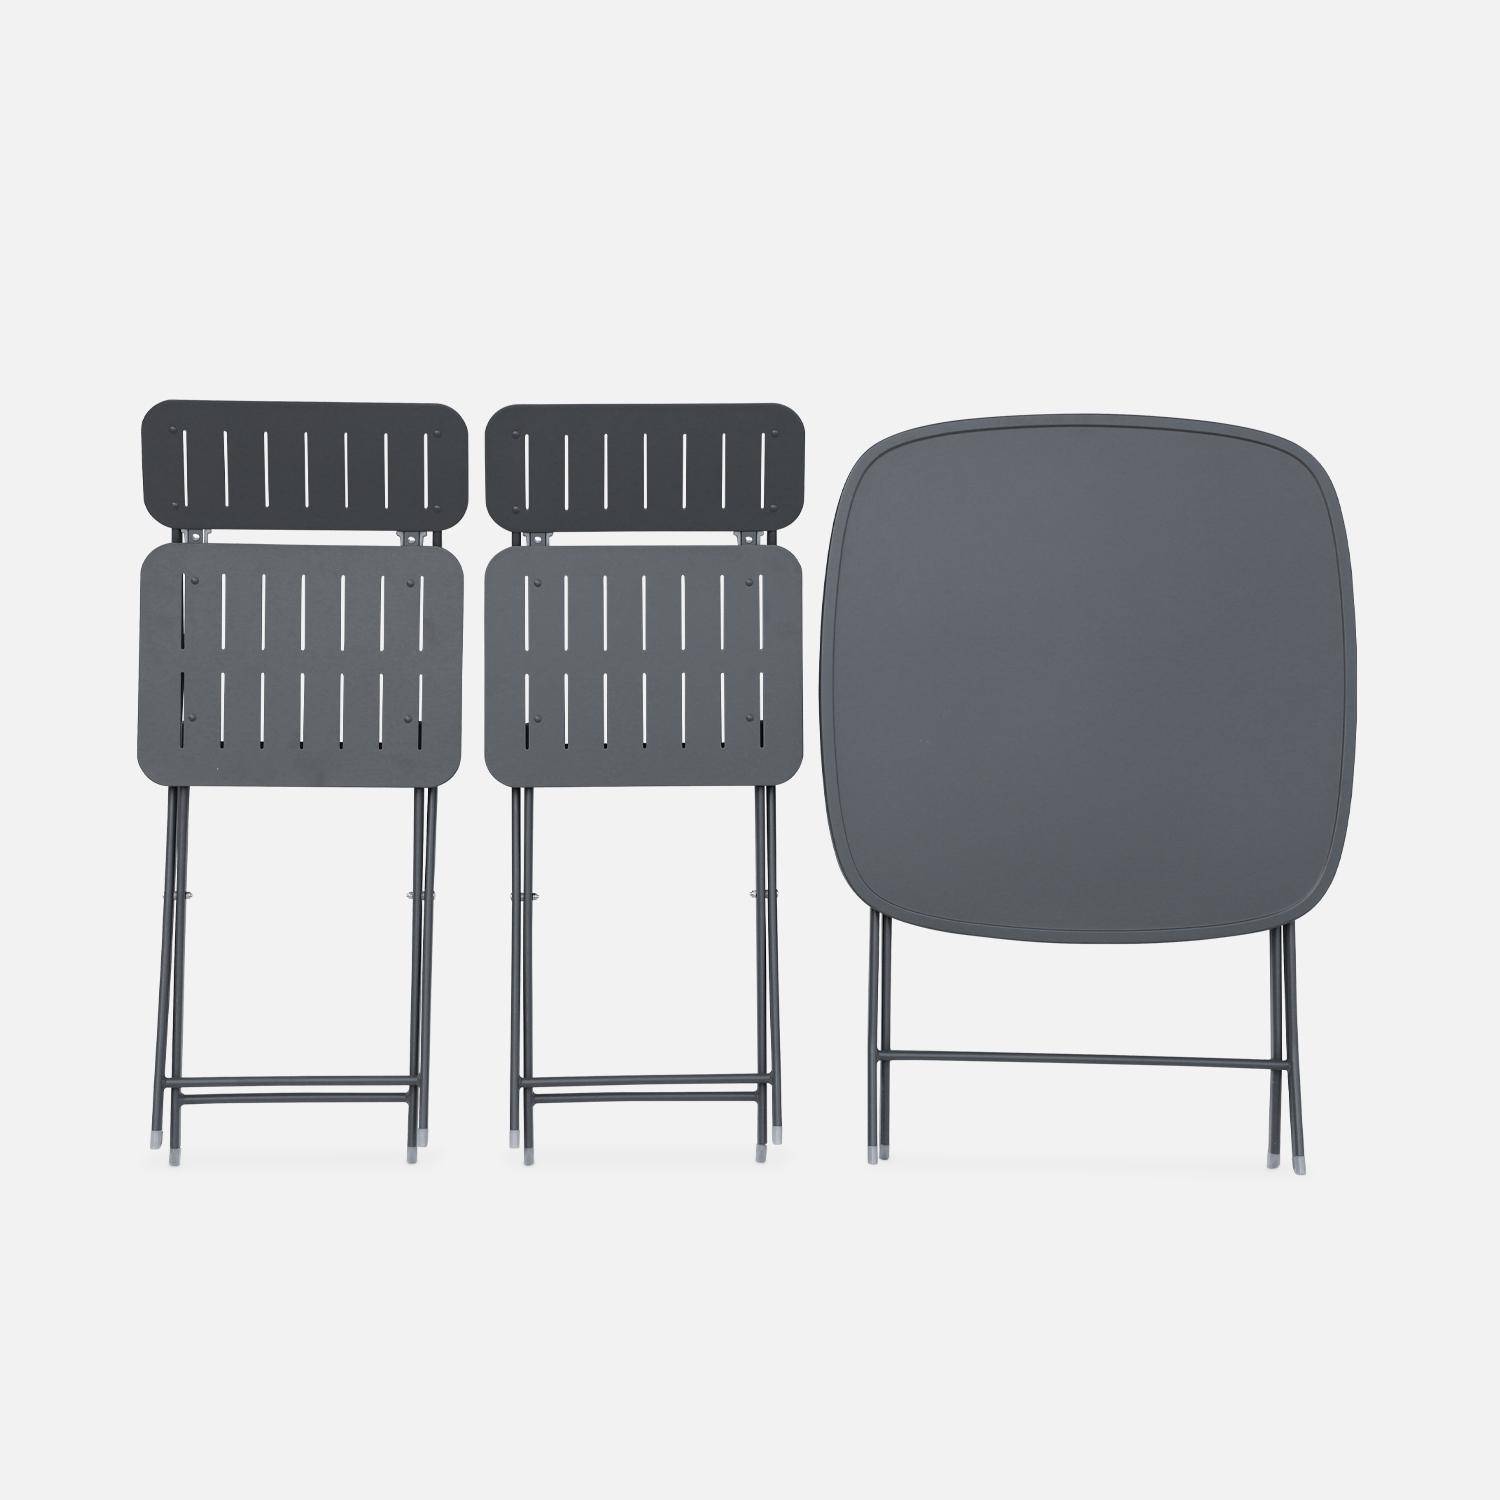 Table de jardin type bistrot pliable anthracite avec 2 chaises également pliables en acier galvanisé robuste Photo6